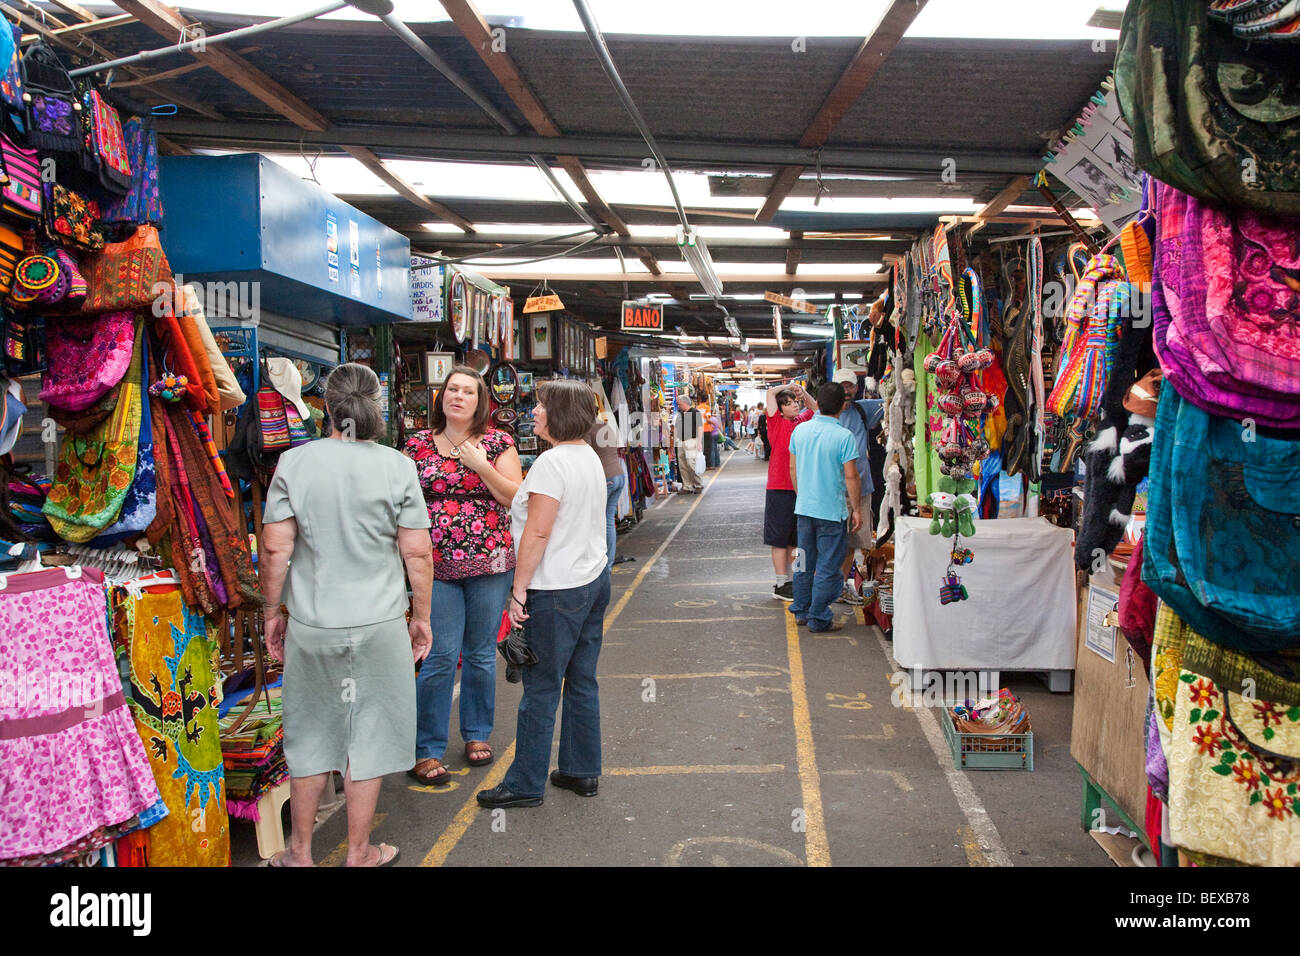 Mercado de Artesania, San Jose, Costa Rica Stock Photo - Alamy